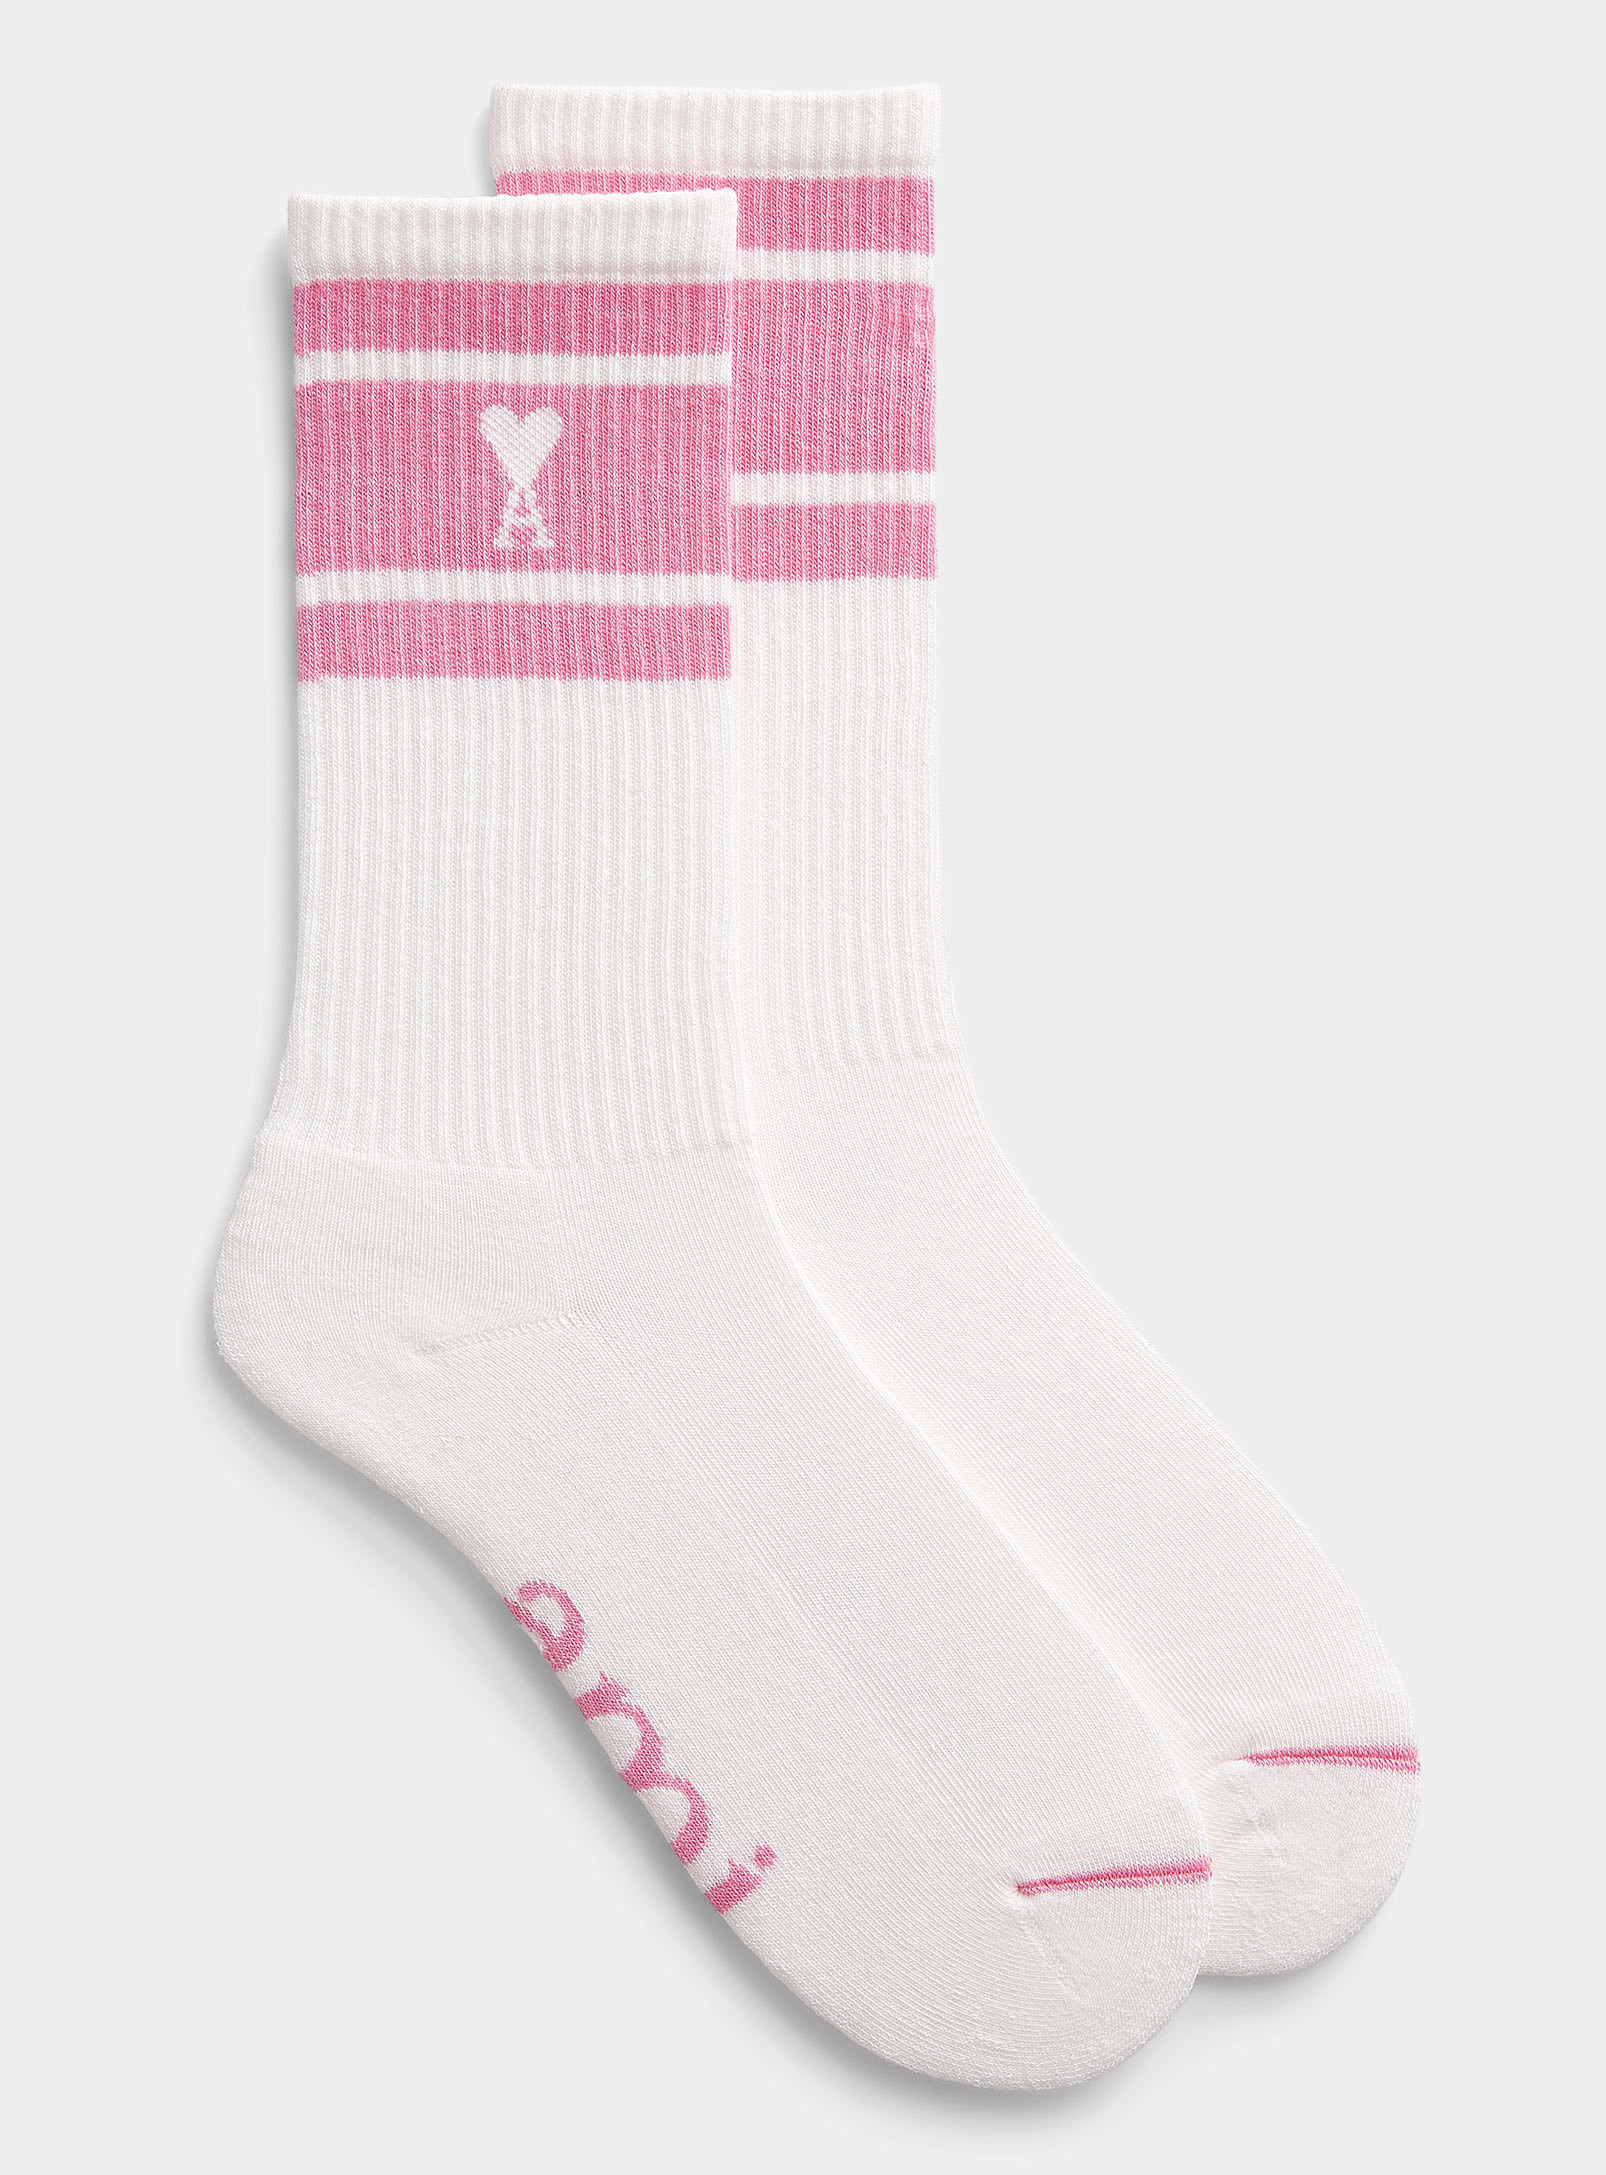 louis vuitton socks pink